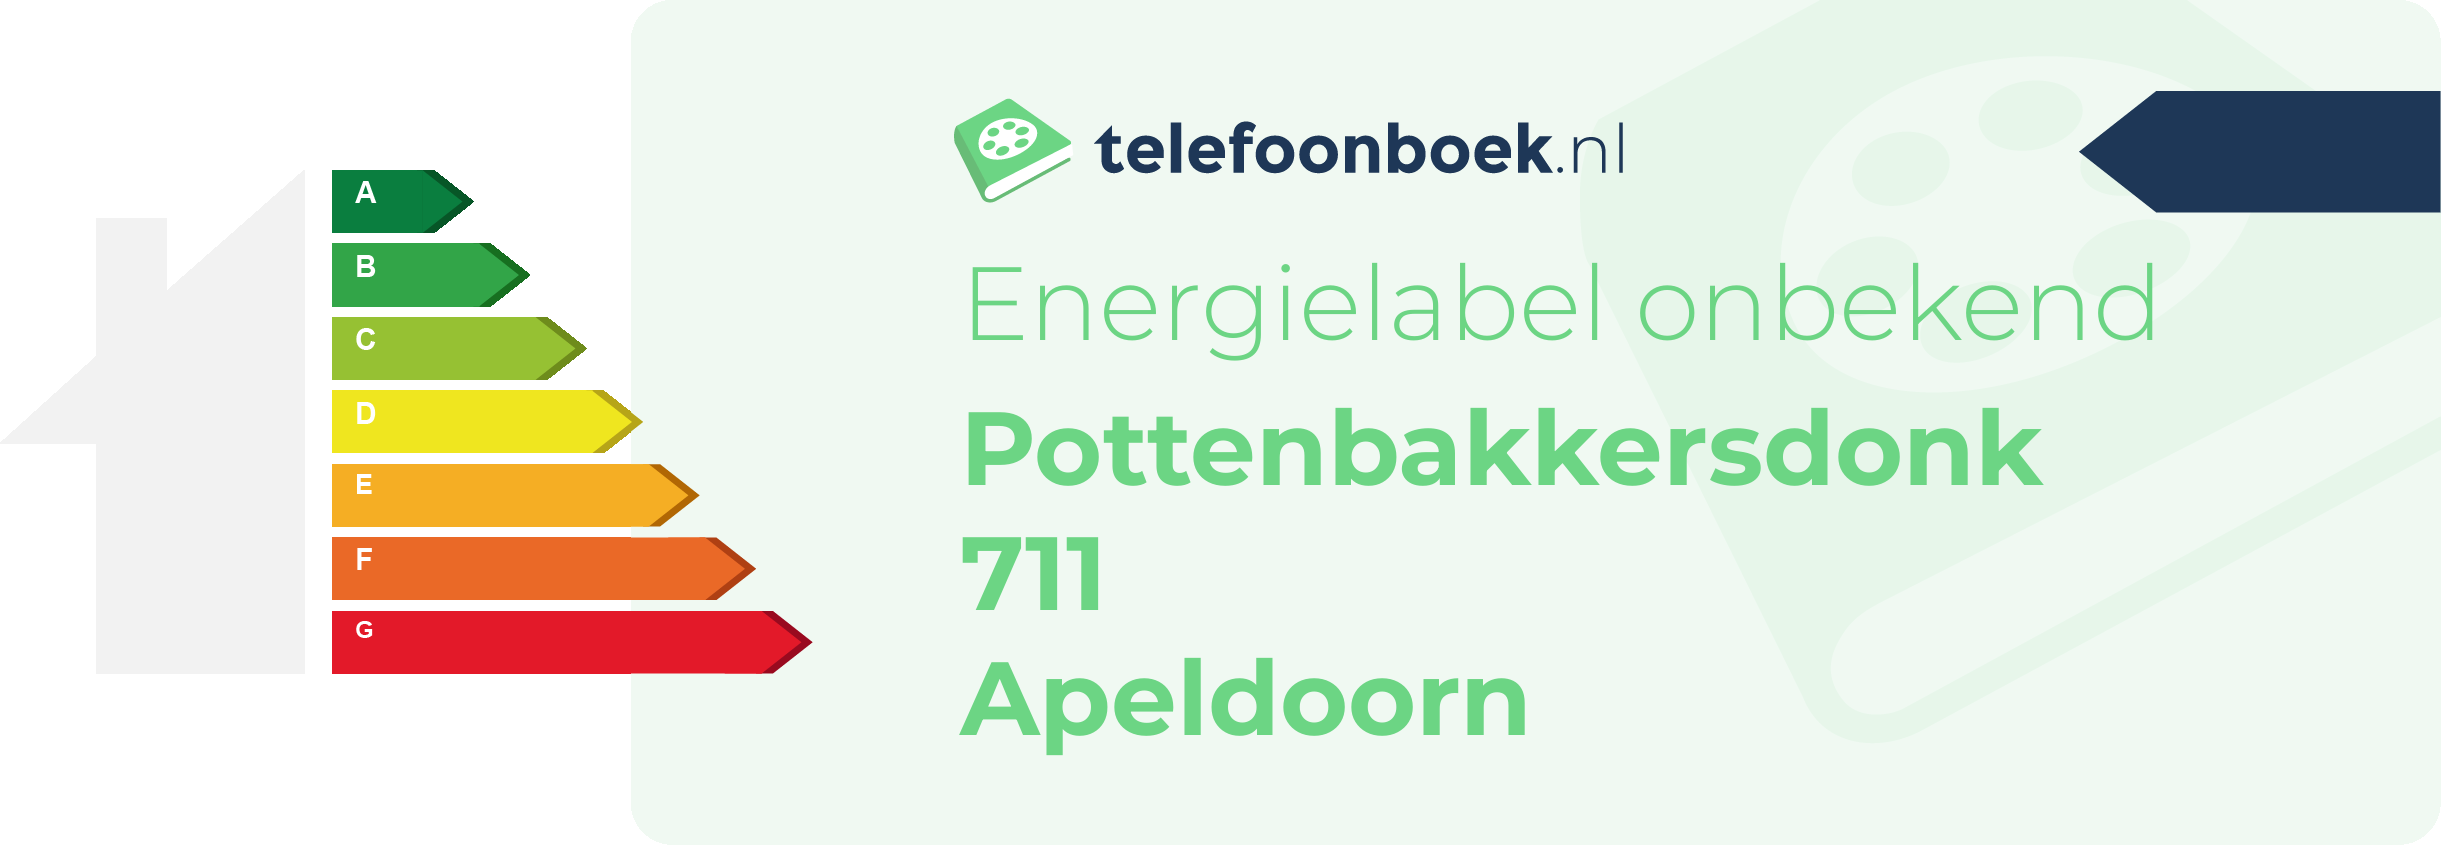 Energielabel Pottenbakkersdonk 711 Apeldoorn